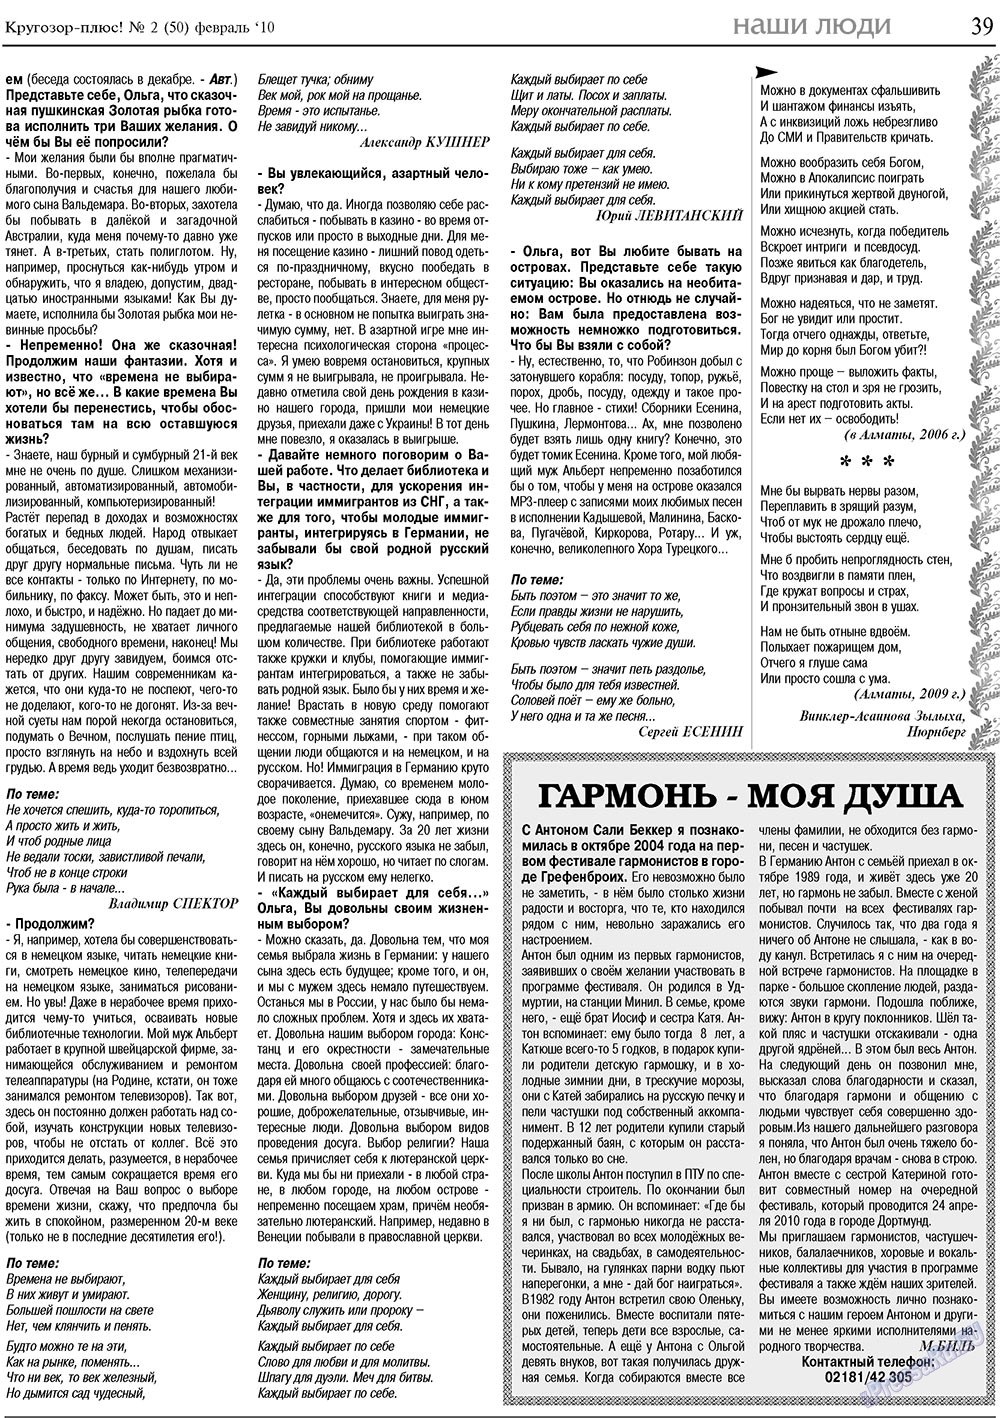 Кругозор плюс!, газета. 2010 №2 стр.39